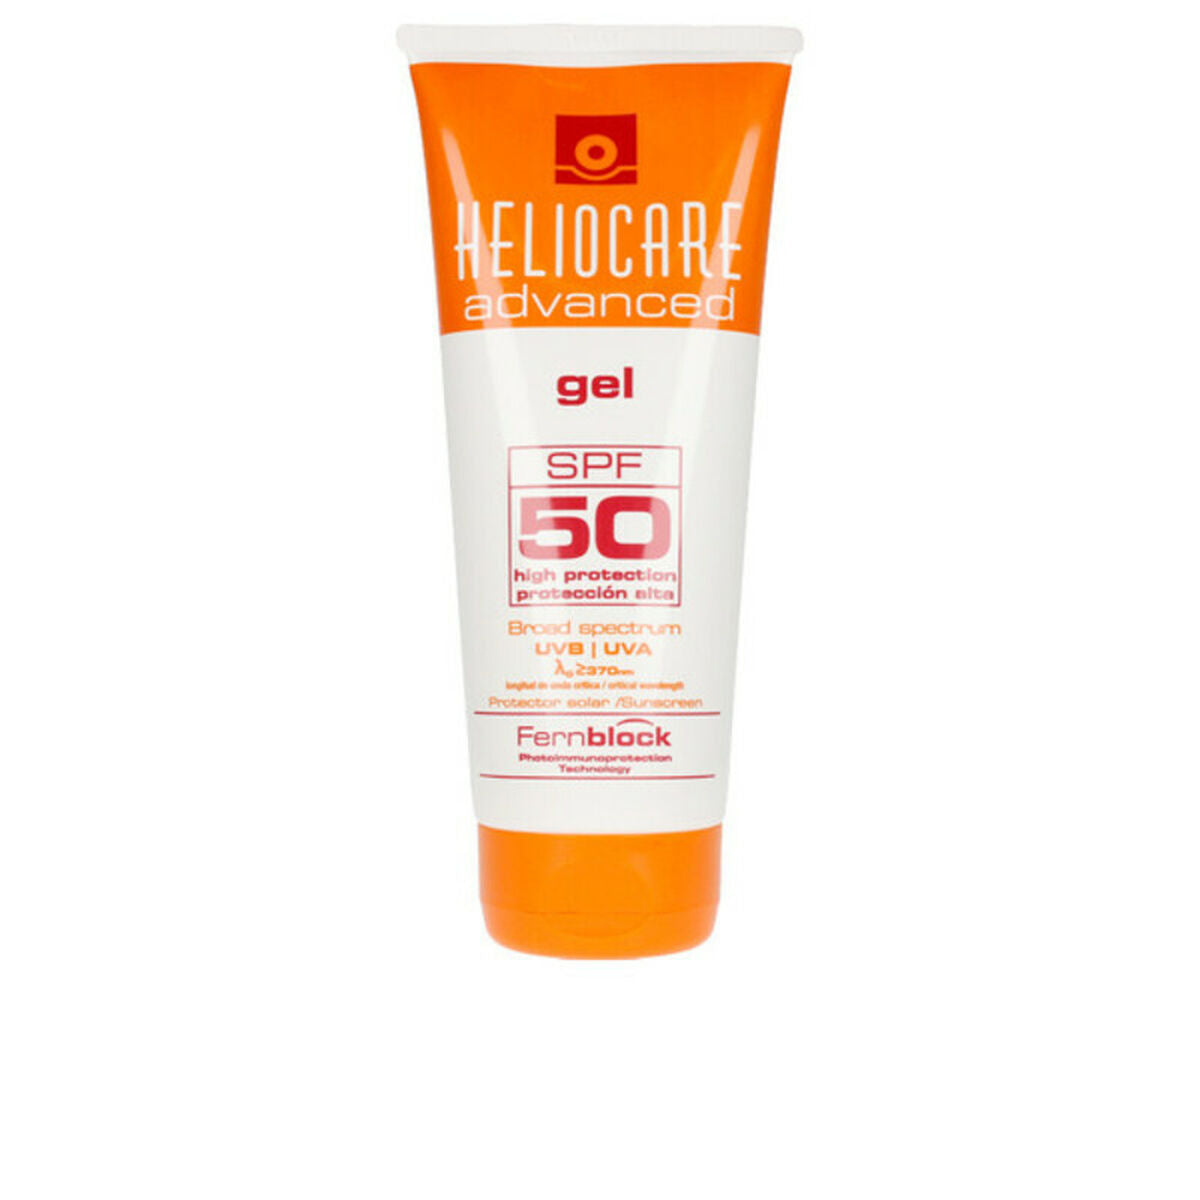 Sonnencreme fürs Gesicht Advanced Heliocare Spf 50